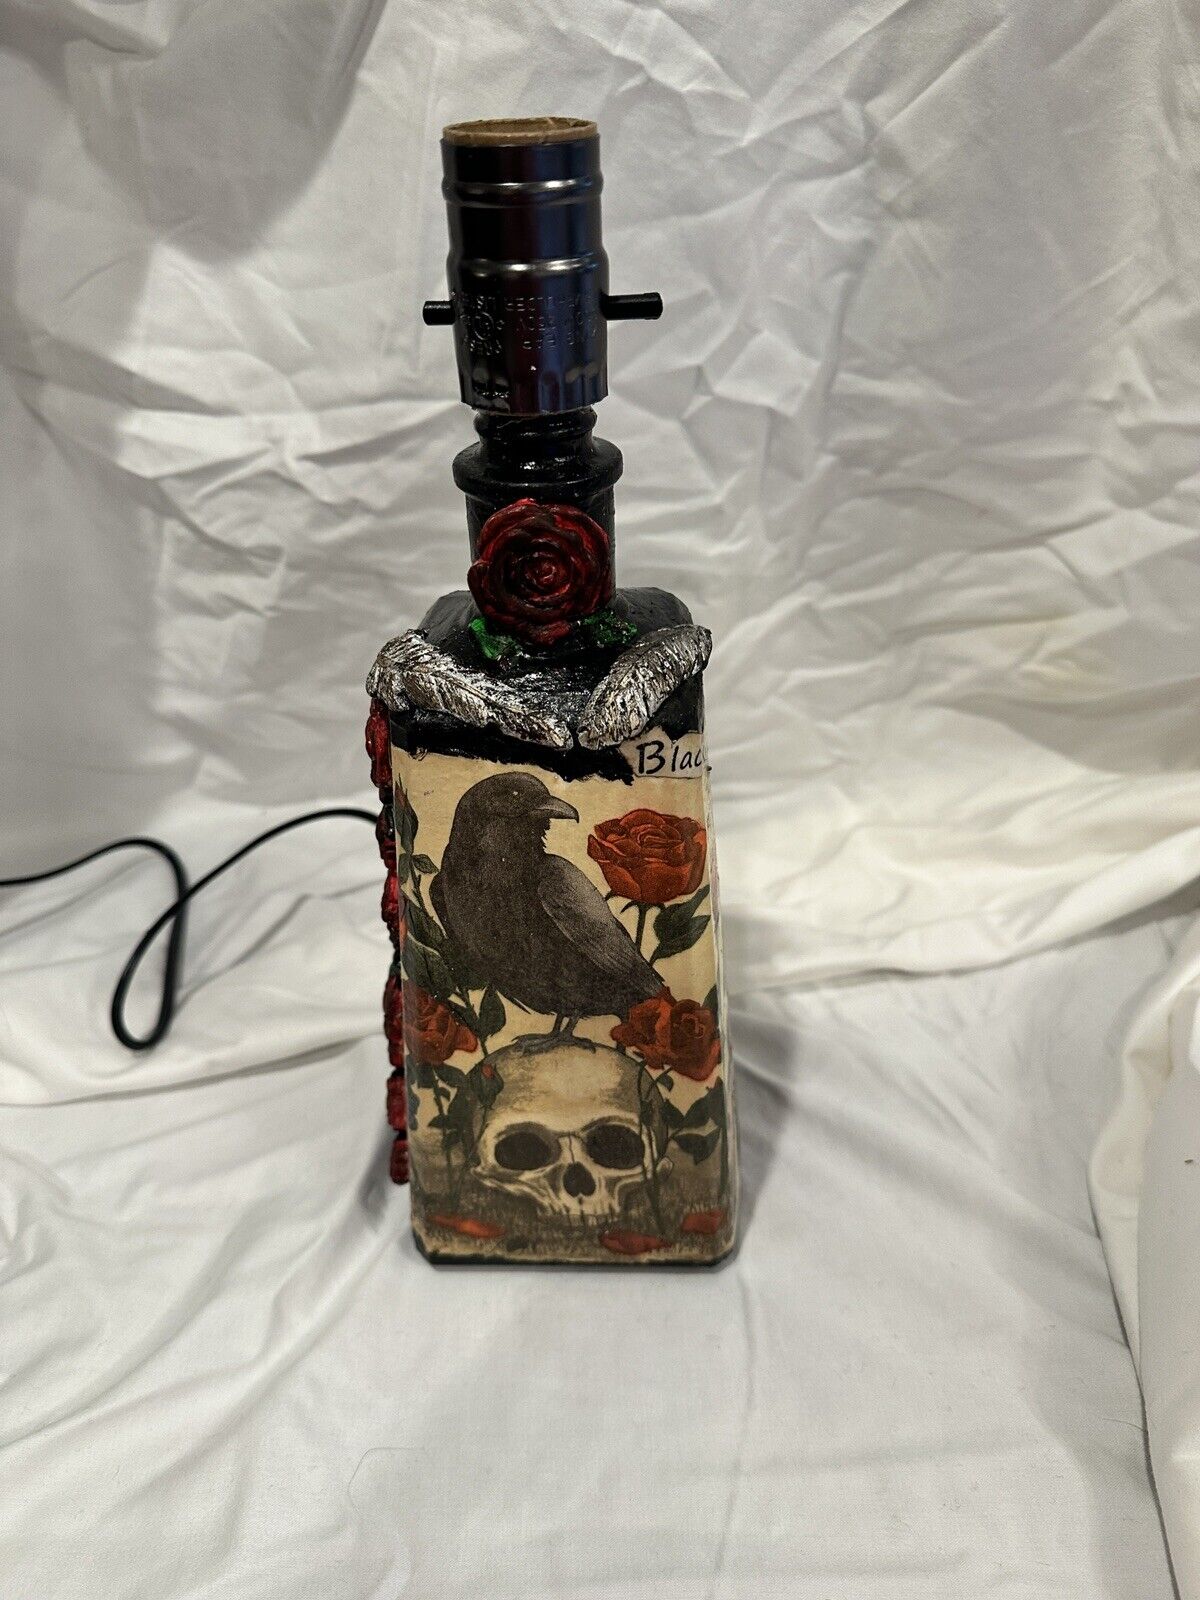  Black Bird Bottle Lamp Inspired By The Beatles 